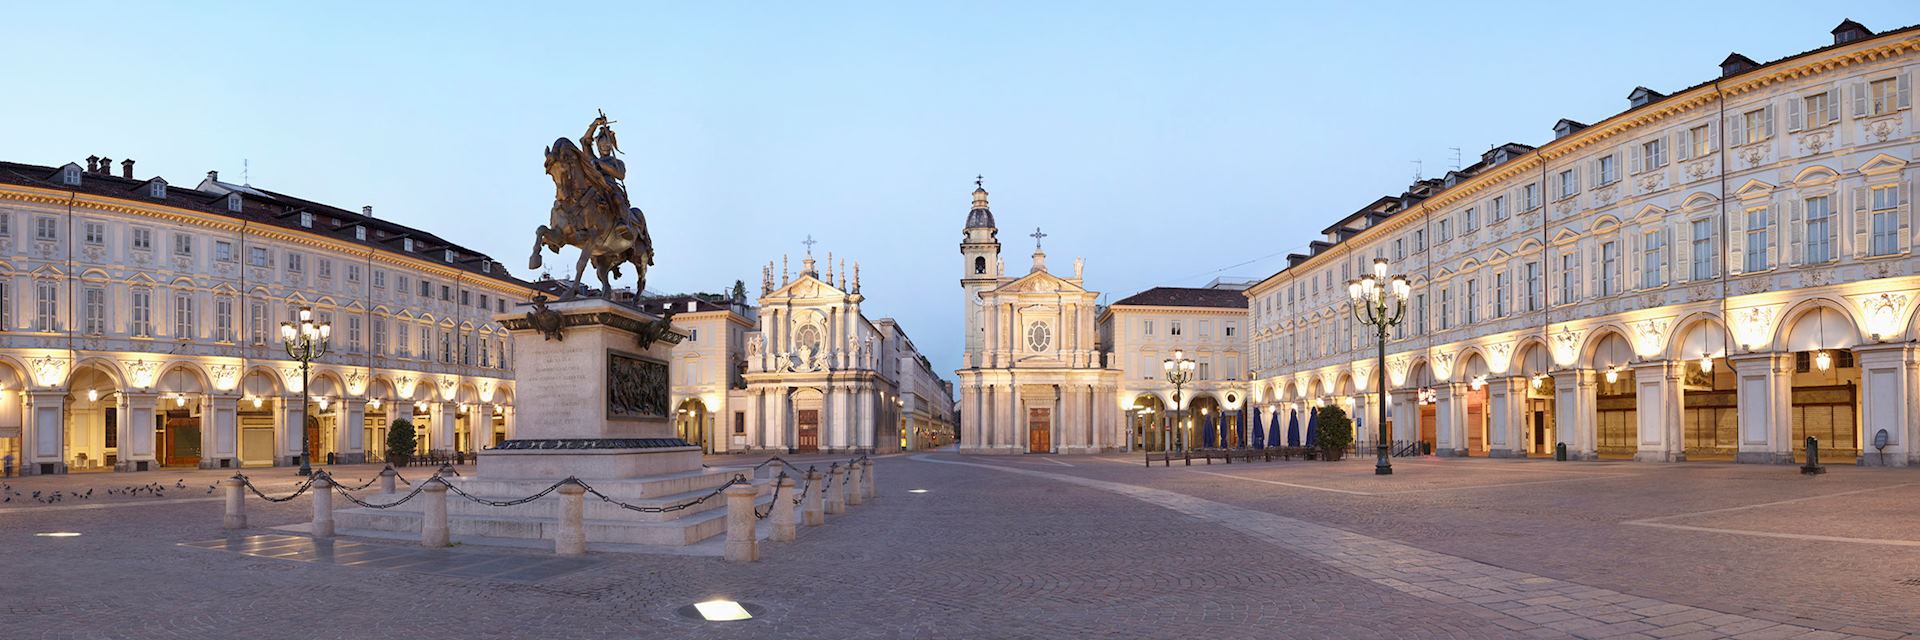 Turin piazza San Carlo